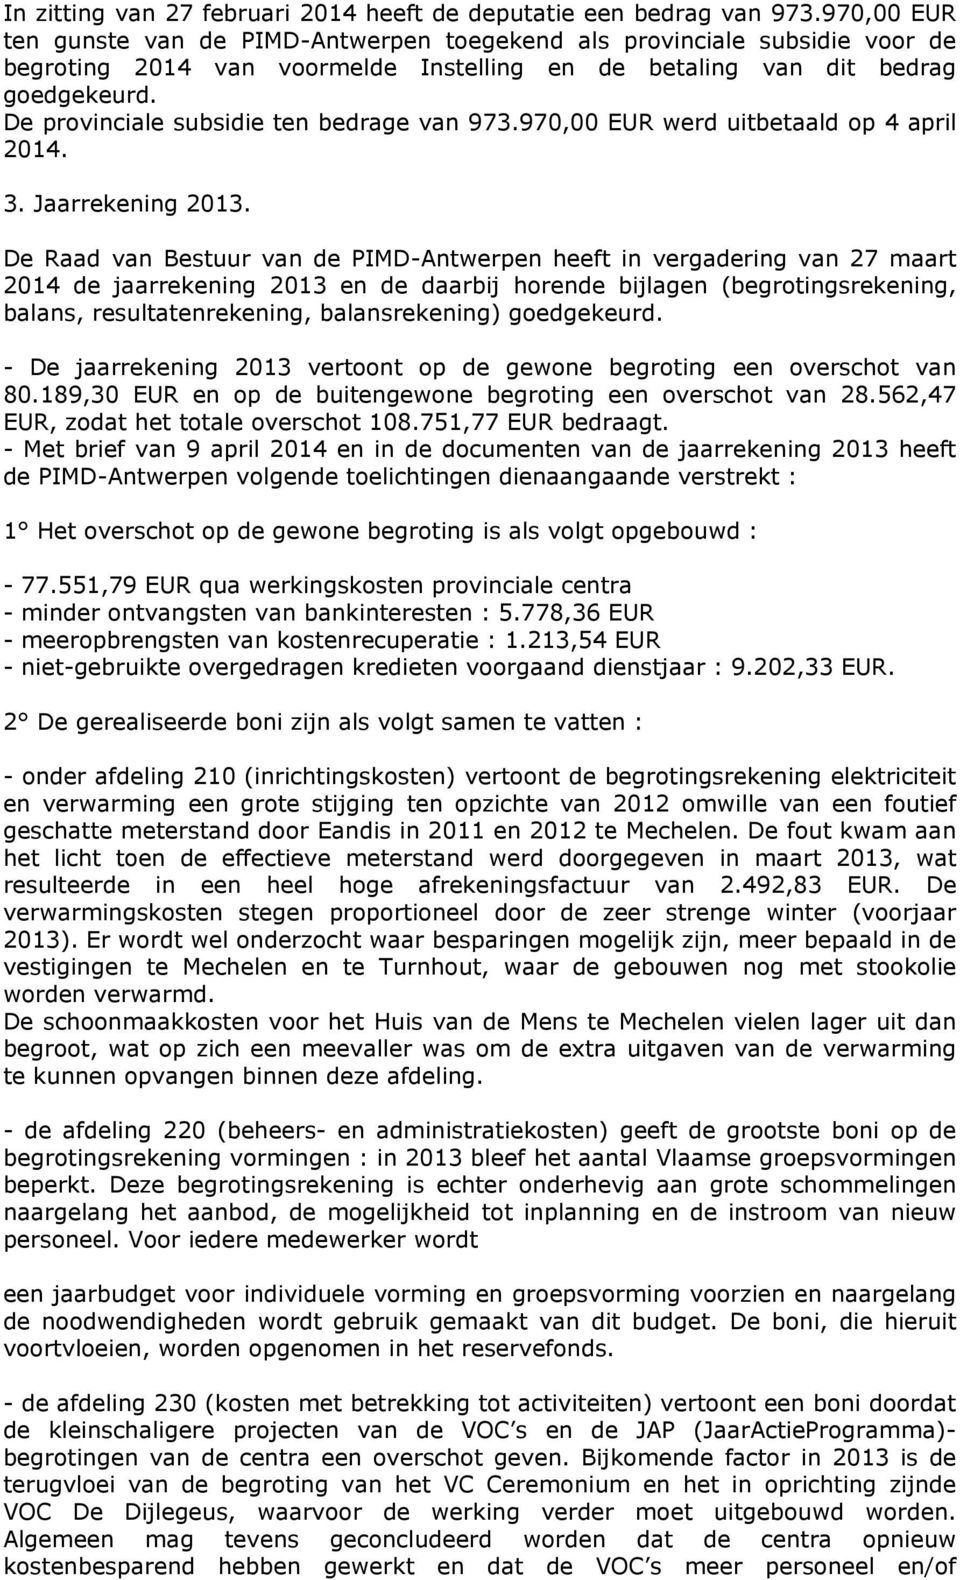 De provinciale subsidie ten bedrage van 973.970,00 EUR werd uitbetaald op 4 april 2014. 3. Jaarrekening 2013.